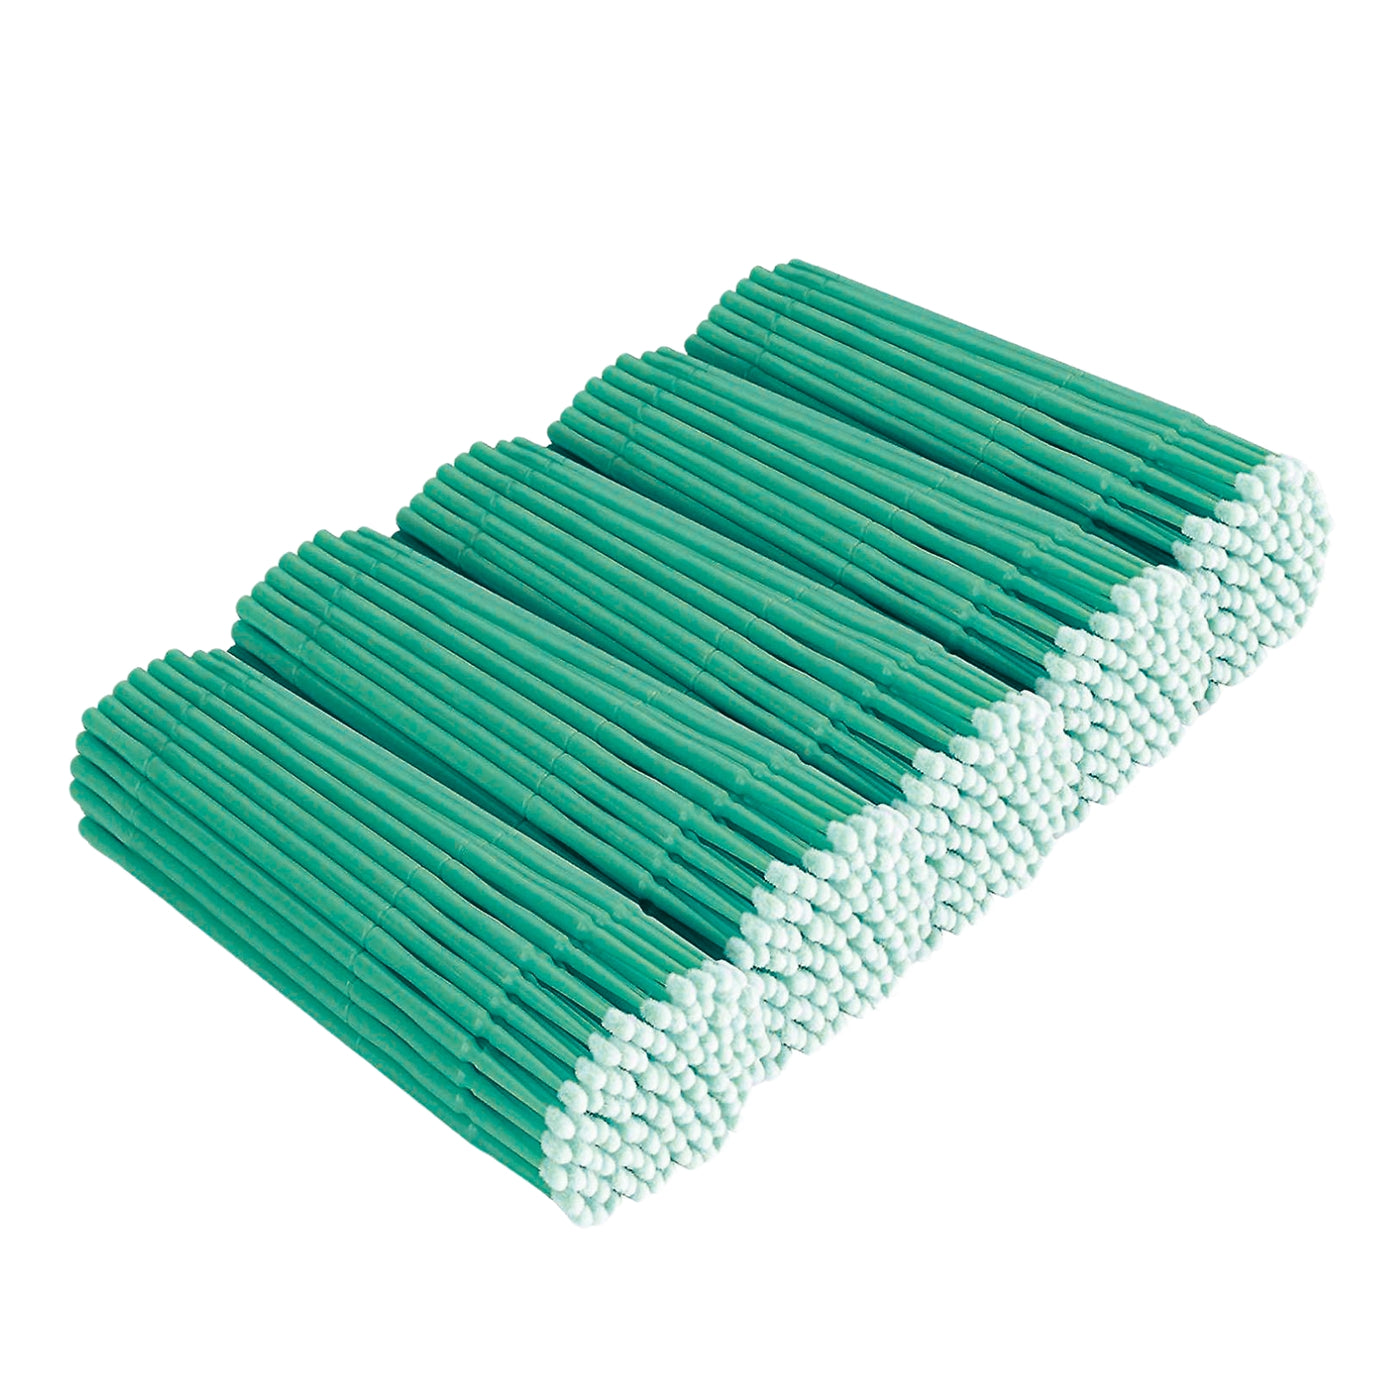  Micro Brush Applicators Lash Jungle Green, 10 Pack